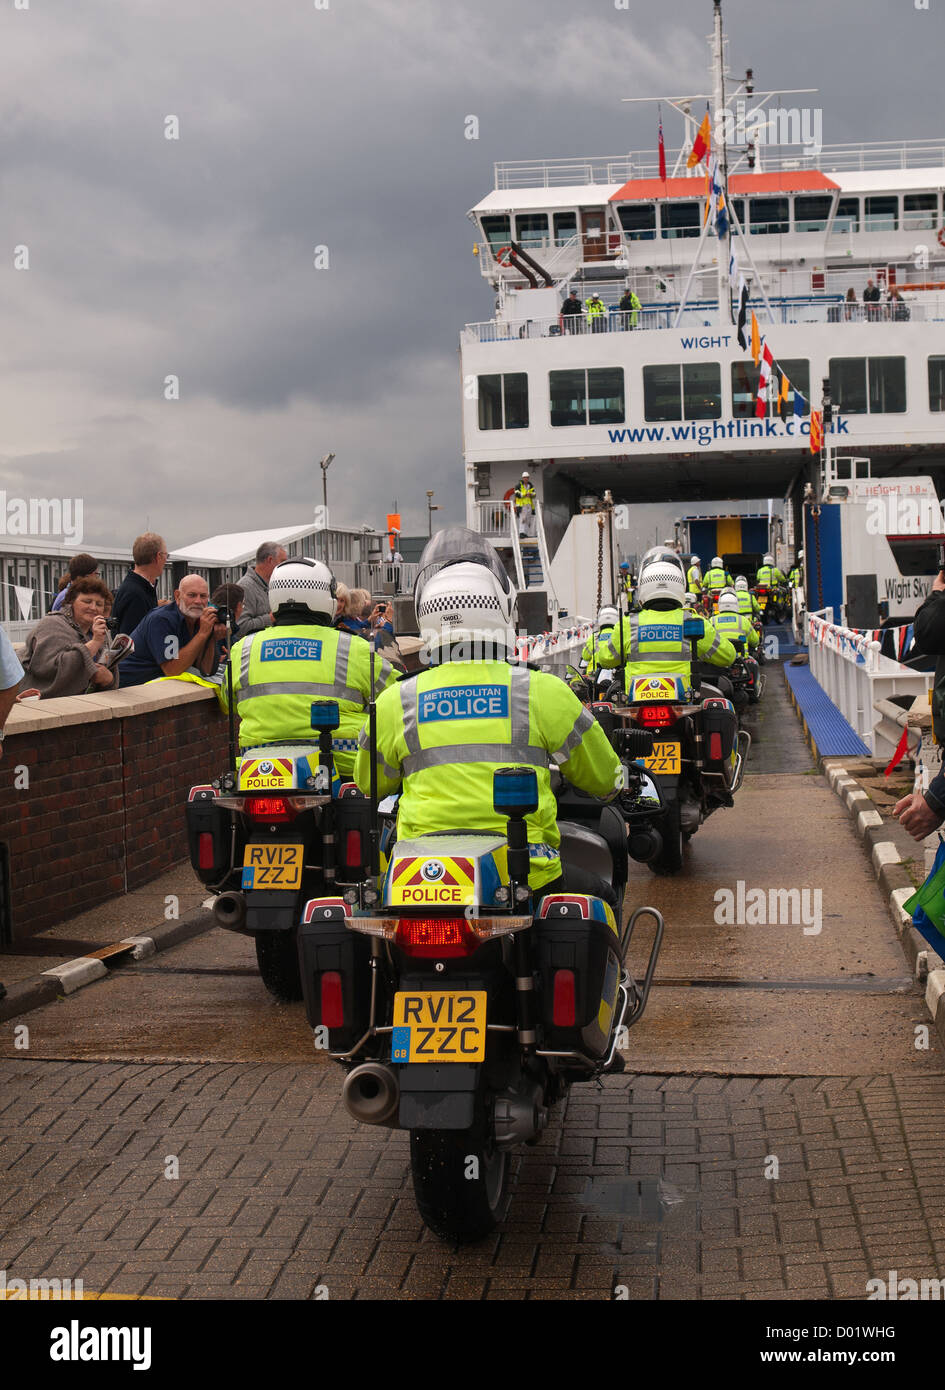 Torcia olimpica Lymington Hampshire England Regno Unito - Metropolitan Police i motociclisti in sella sul Wightlink traghetto per auto Foto Stock